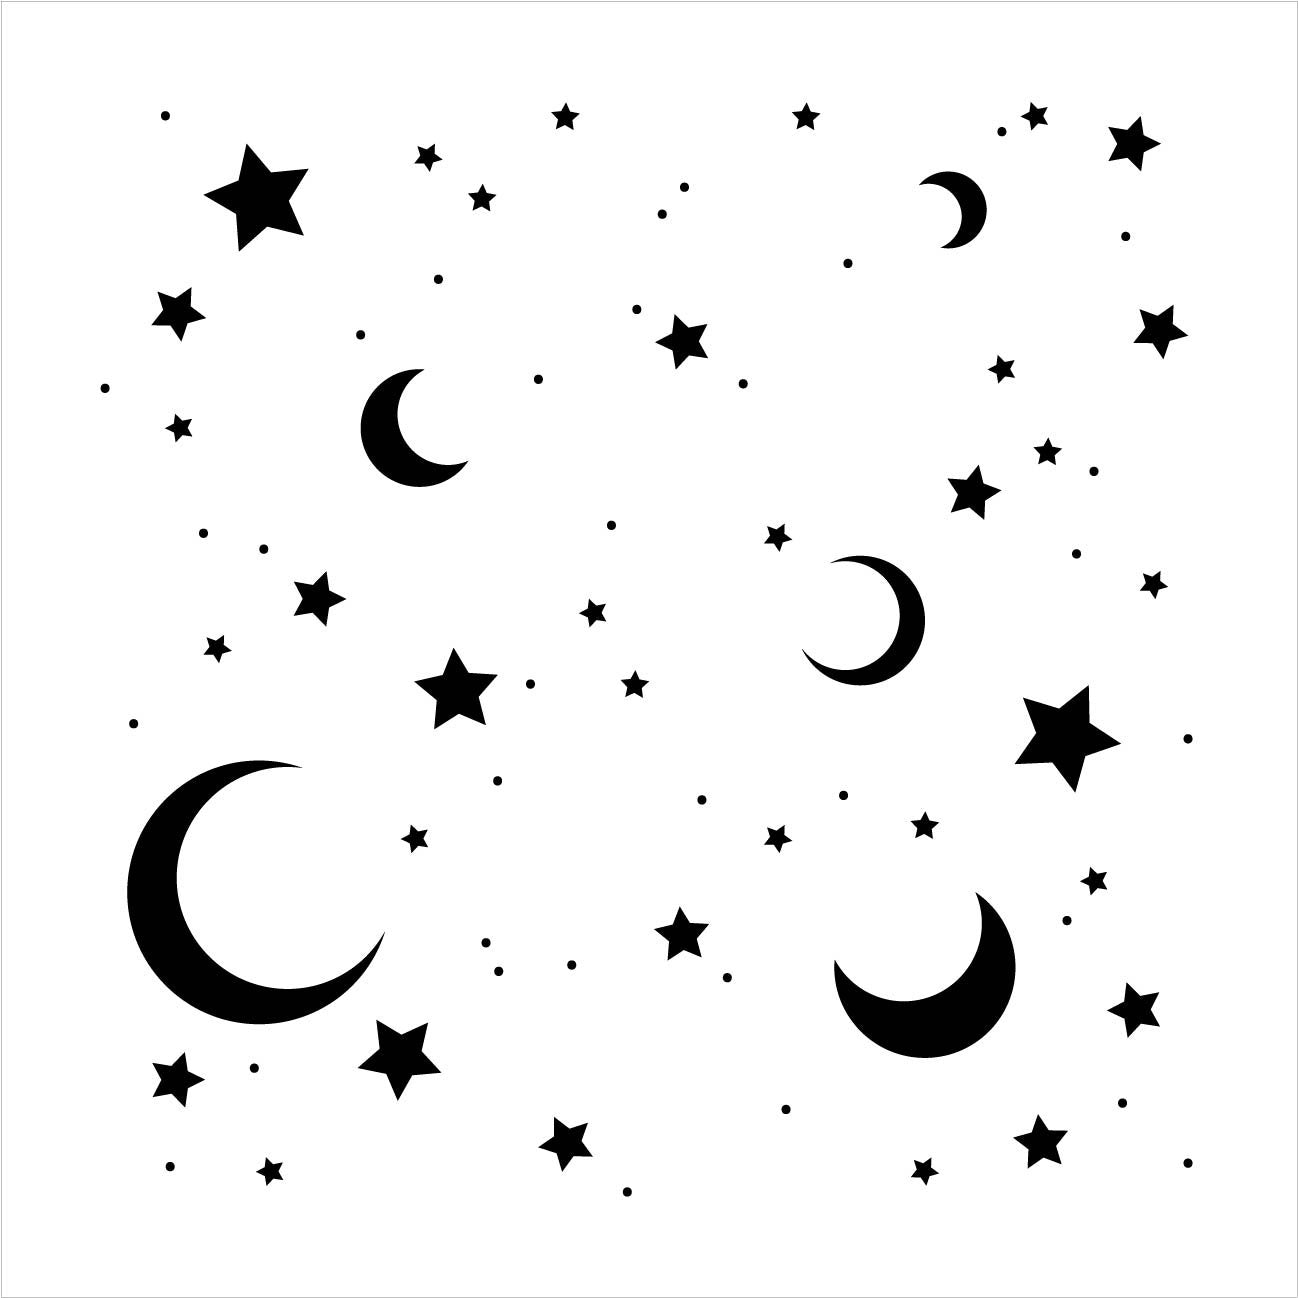 moon-stars-stencil-by-studior12-dreamy-night-sky-pattern-art-reu